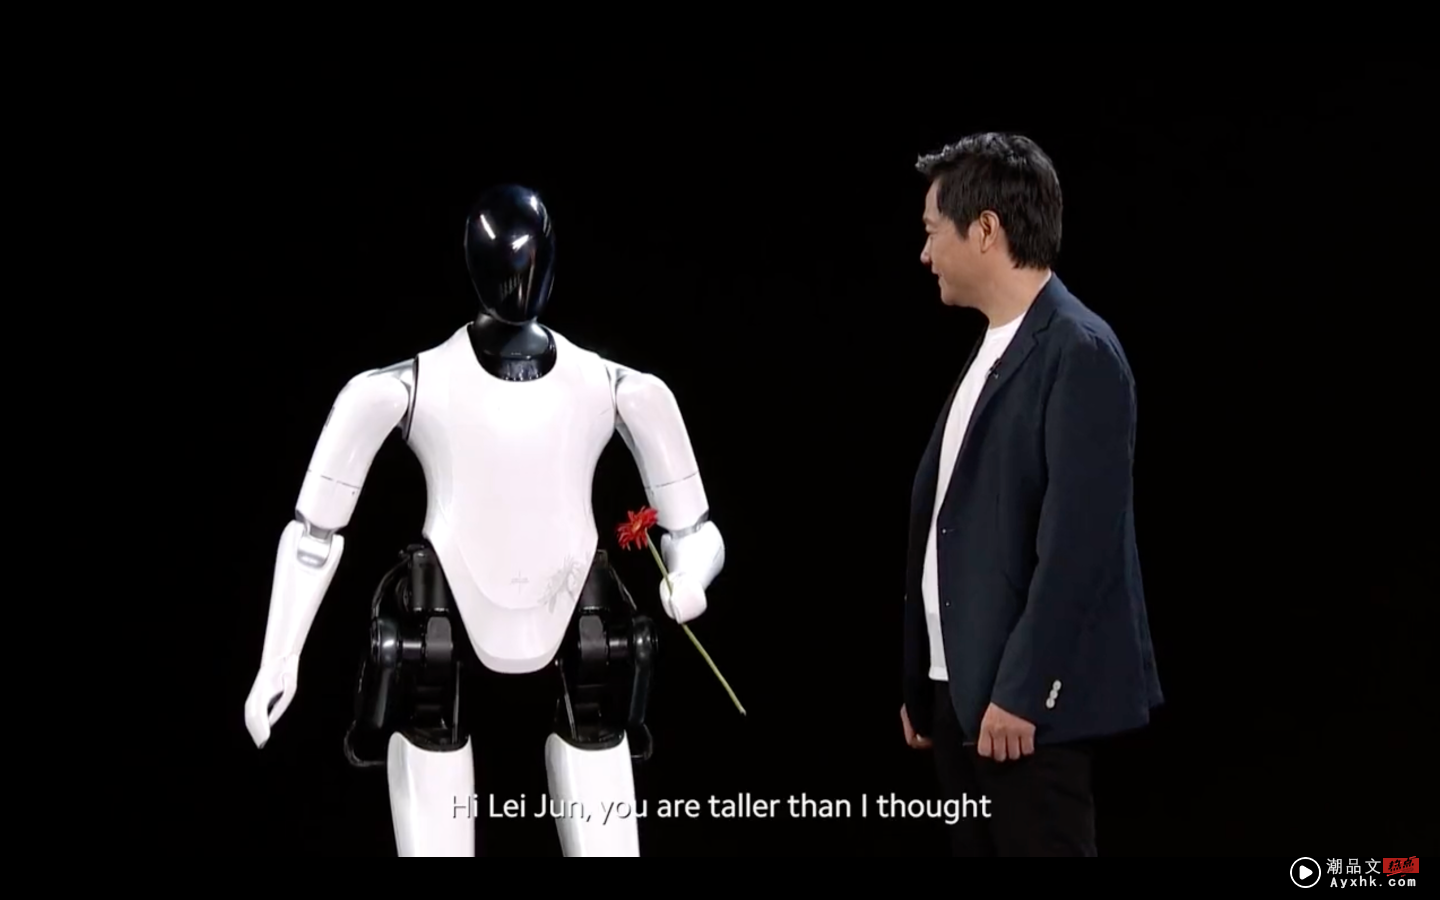 小米总裁雷军年度演讲：极轻薄折叠手机 MIX Fold 2、全尺寸人形仿生机器人 CyberOne 成全场焦点 数码科技 图5张